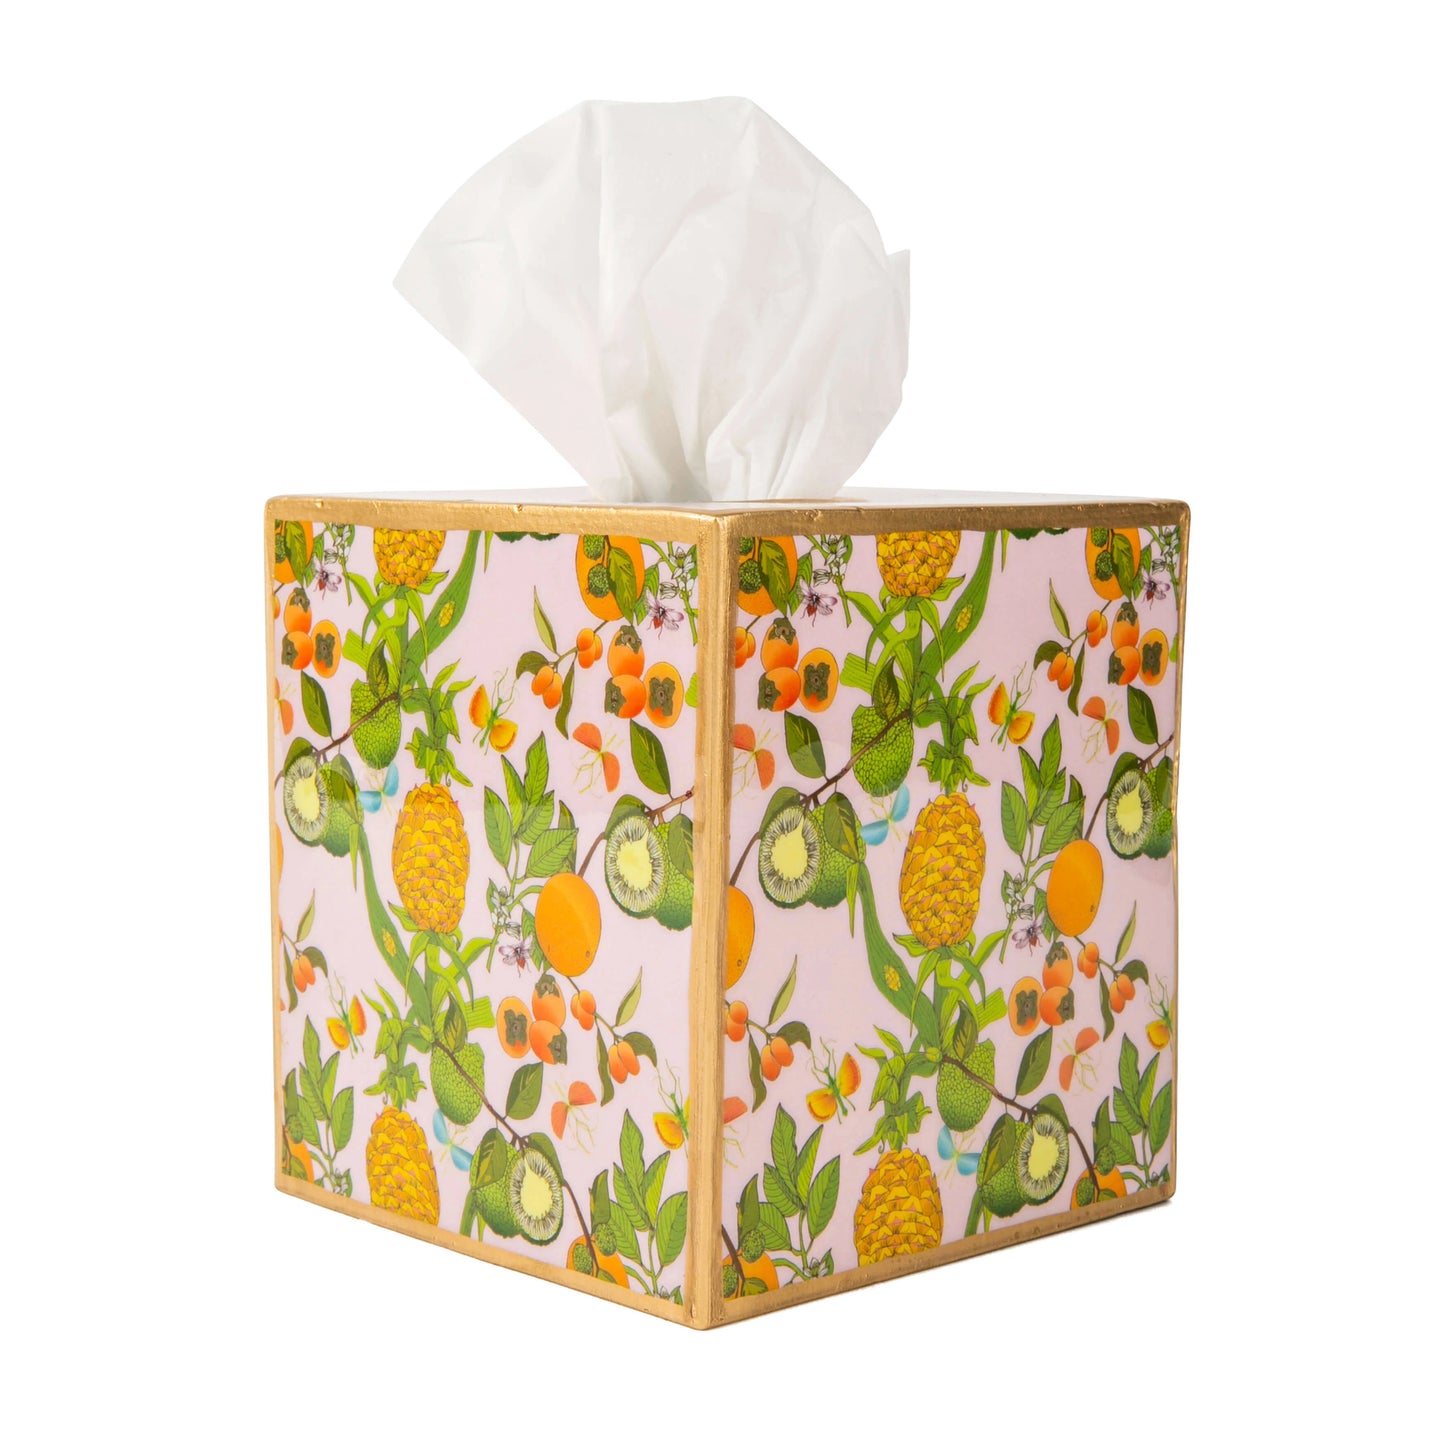 Pineapple Gardens Enamel Tissue Box Cover